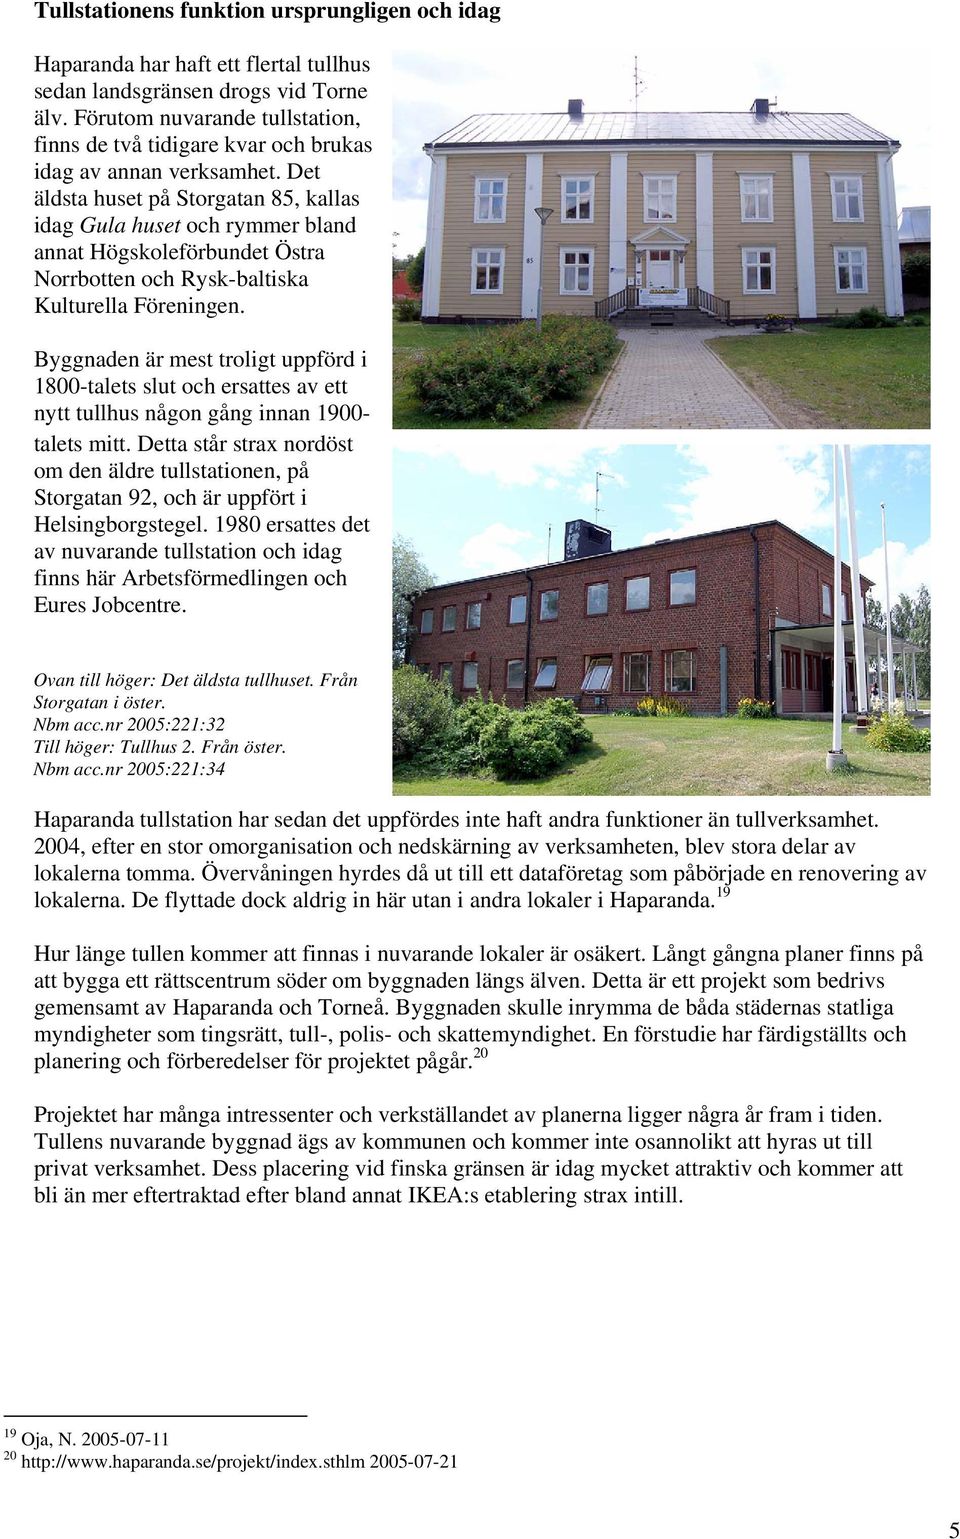 Det äldsta huset på Storgatan 85, kallas idag Gula huset och rymmer bland annat Högskoleförbundet Östra Norrbotten och Rysk-baltiska Kulturella Föreningen.